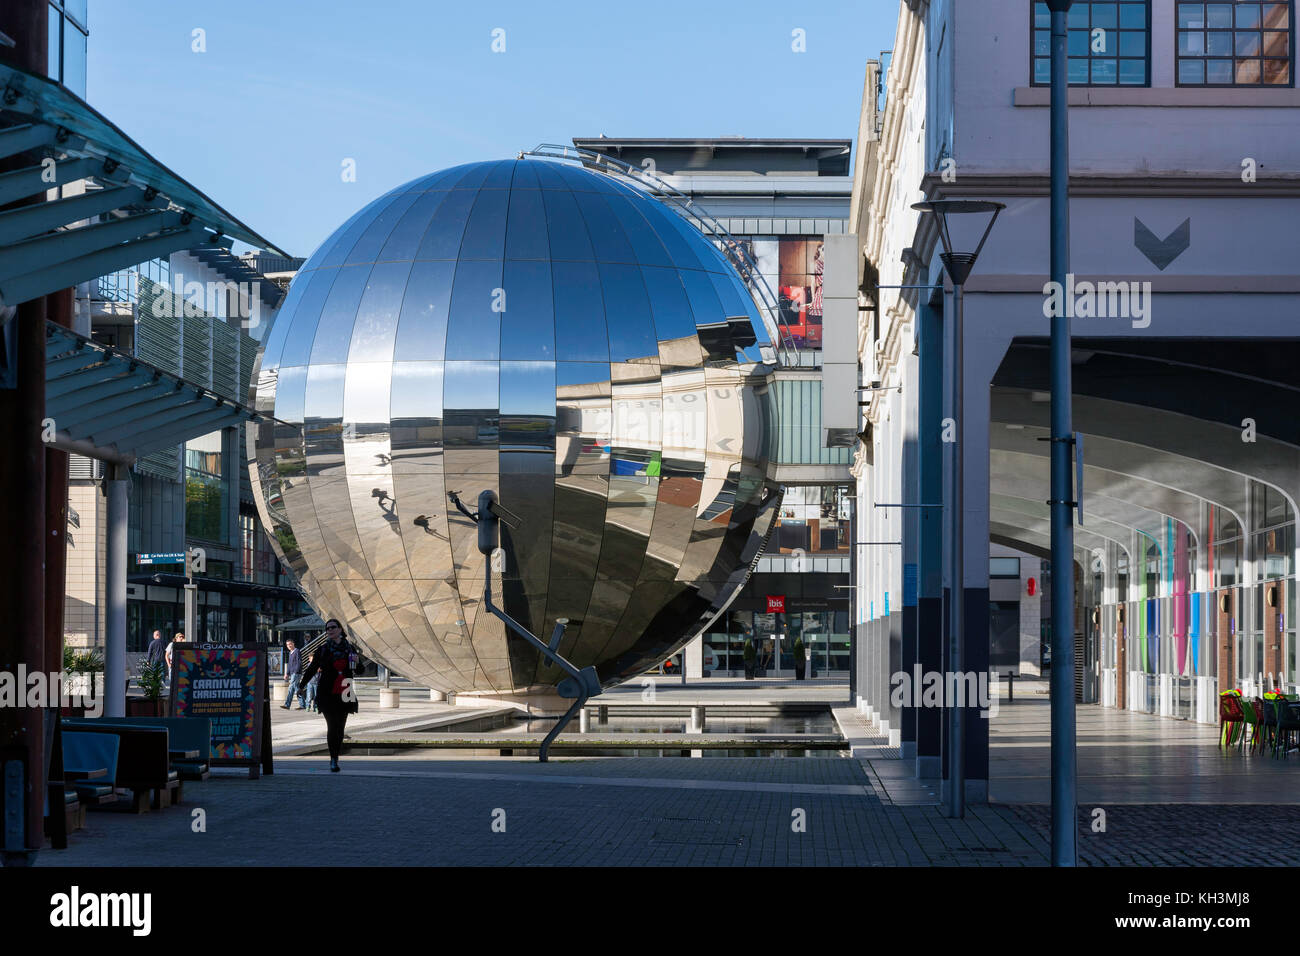 Globe miroir en place du millénaire, Harbourside, Bristol, Angleterre, Royaume-Uni Banque D'Images